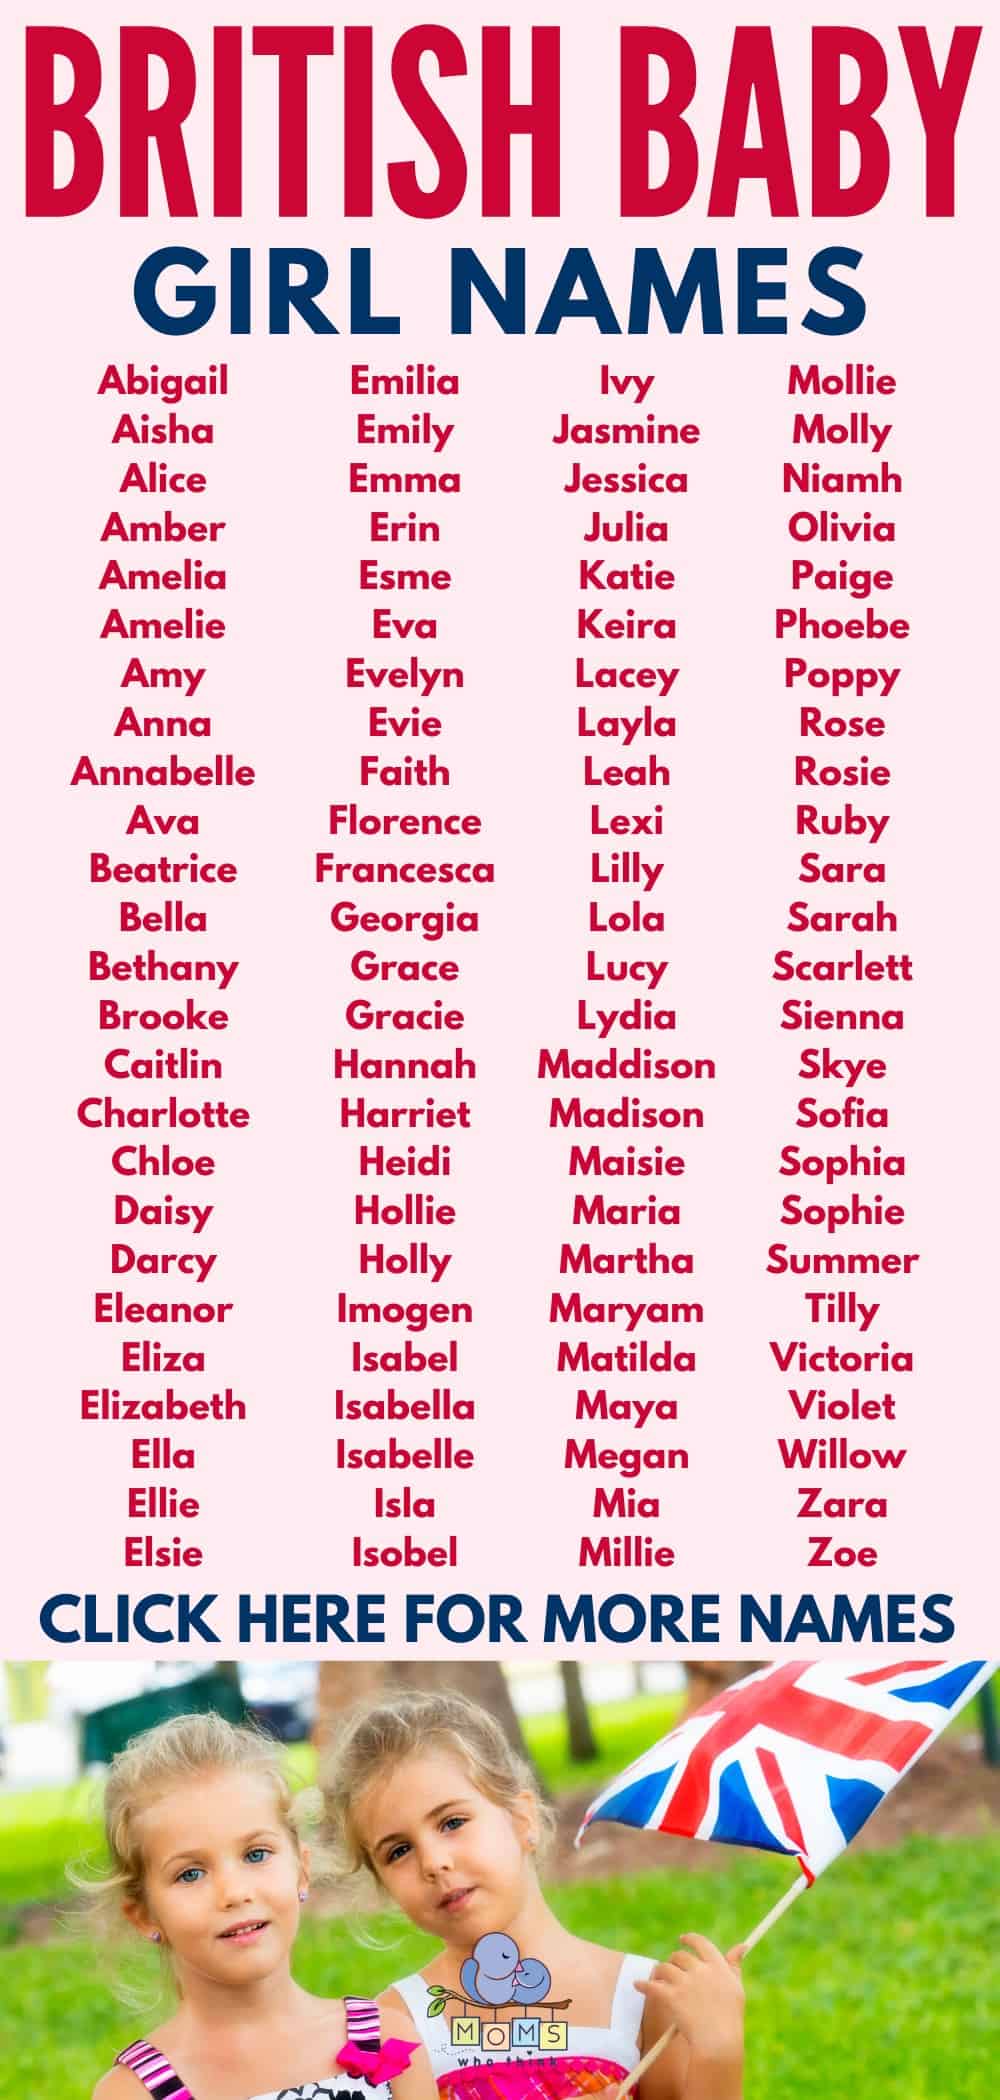 British Baby Girls Names